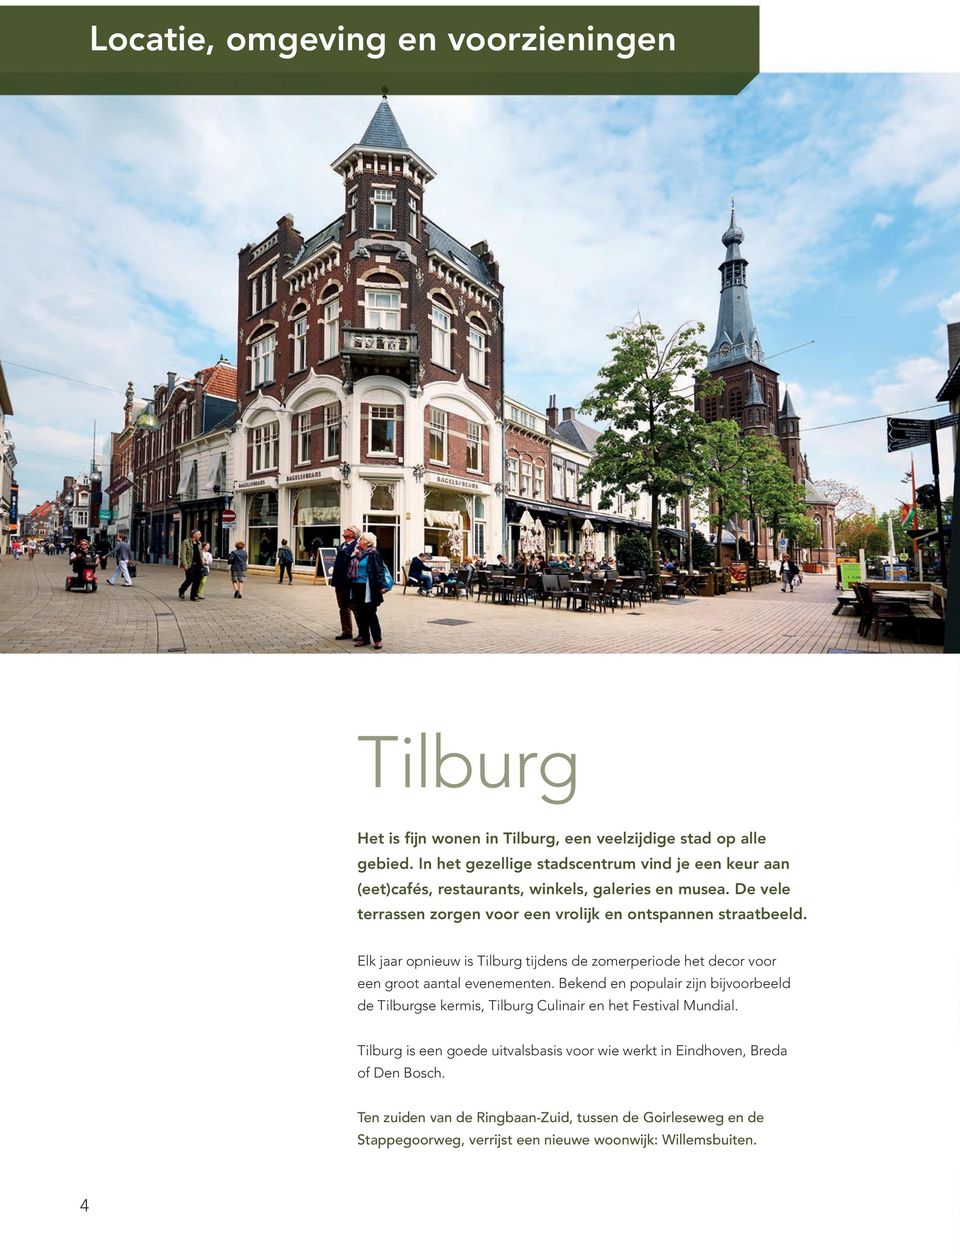 Elk jaar opnieuw is Tilburg tijdens de zomerperiode het decor voor een groot aantal evenementen.